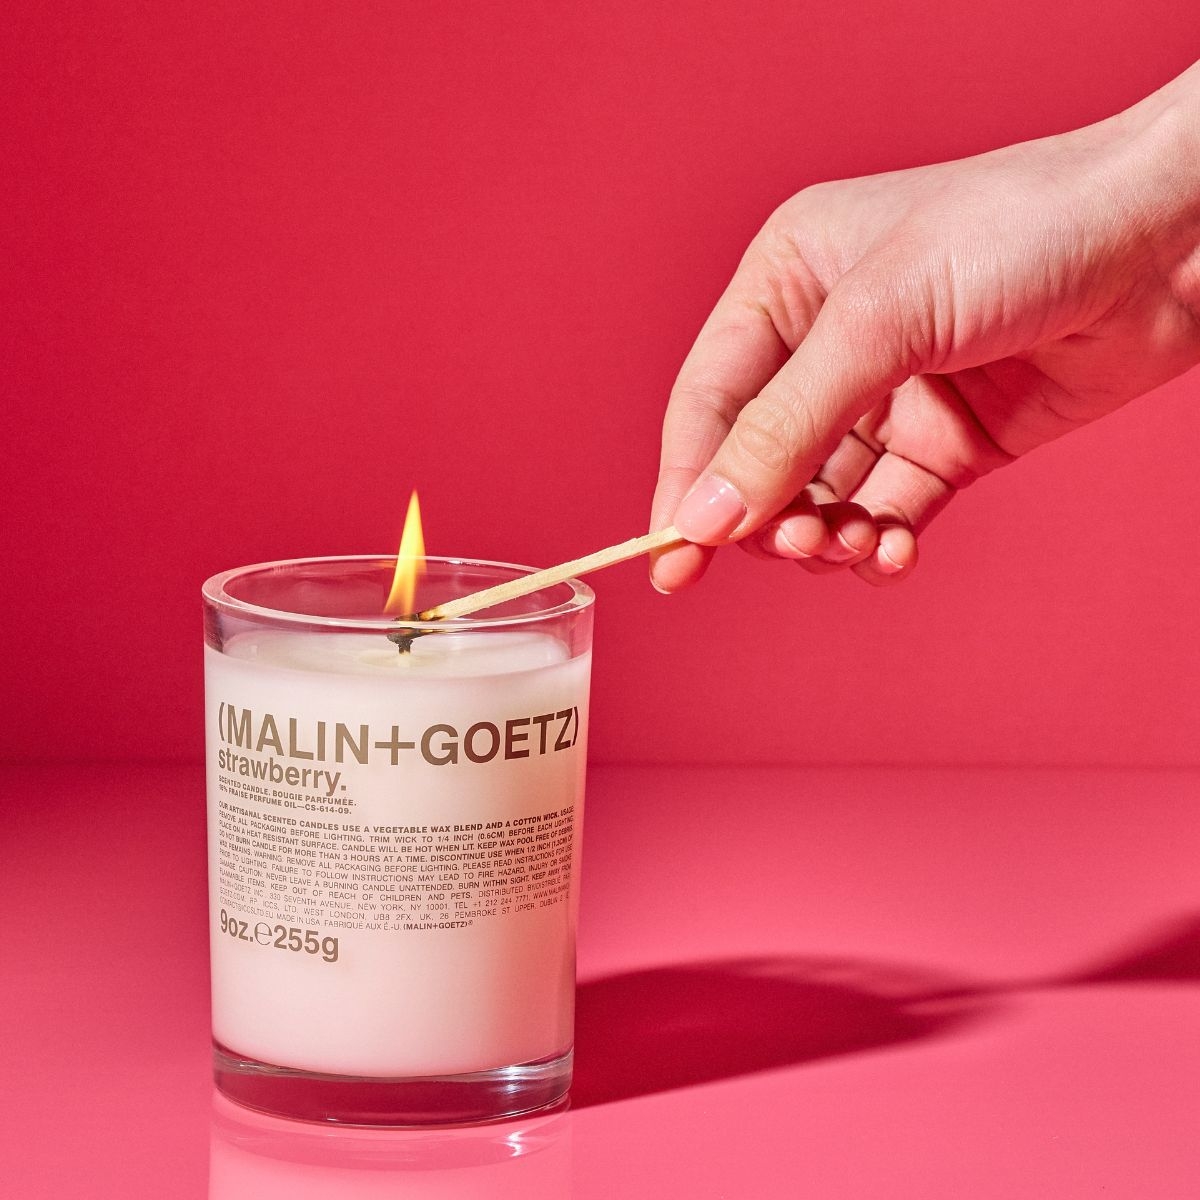 Afbeelding van Strawberry scented candle van het merk Malin + Goetz